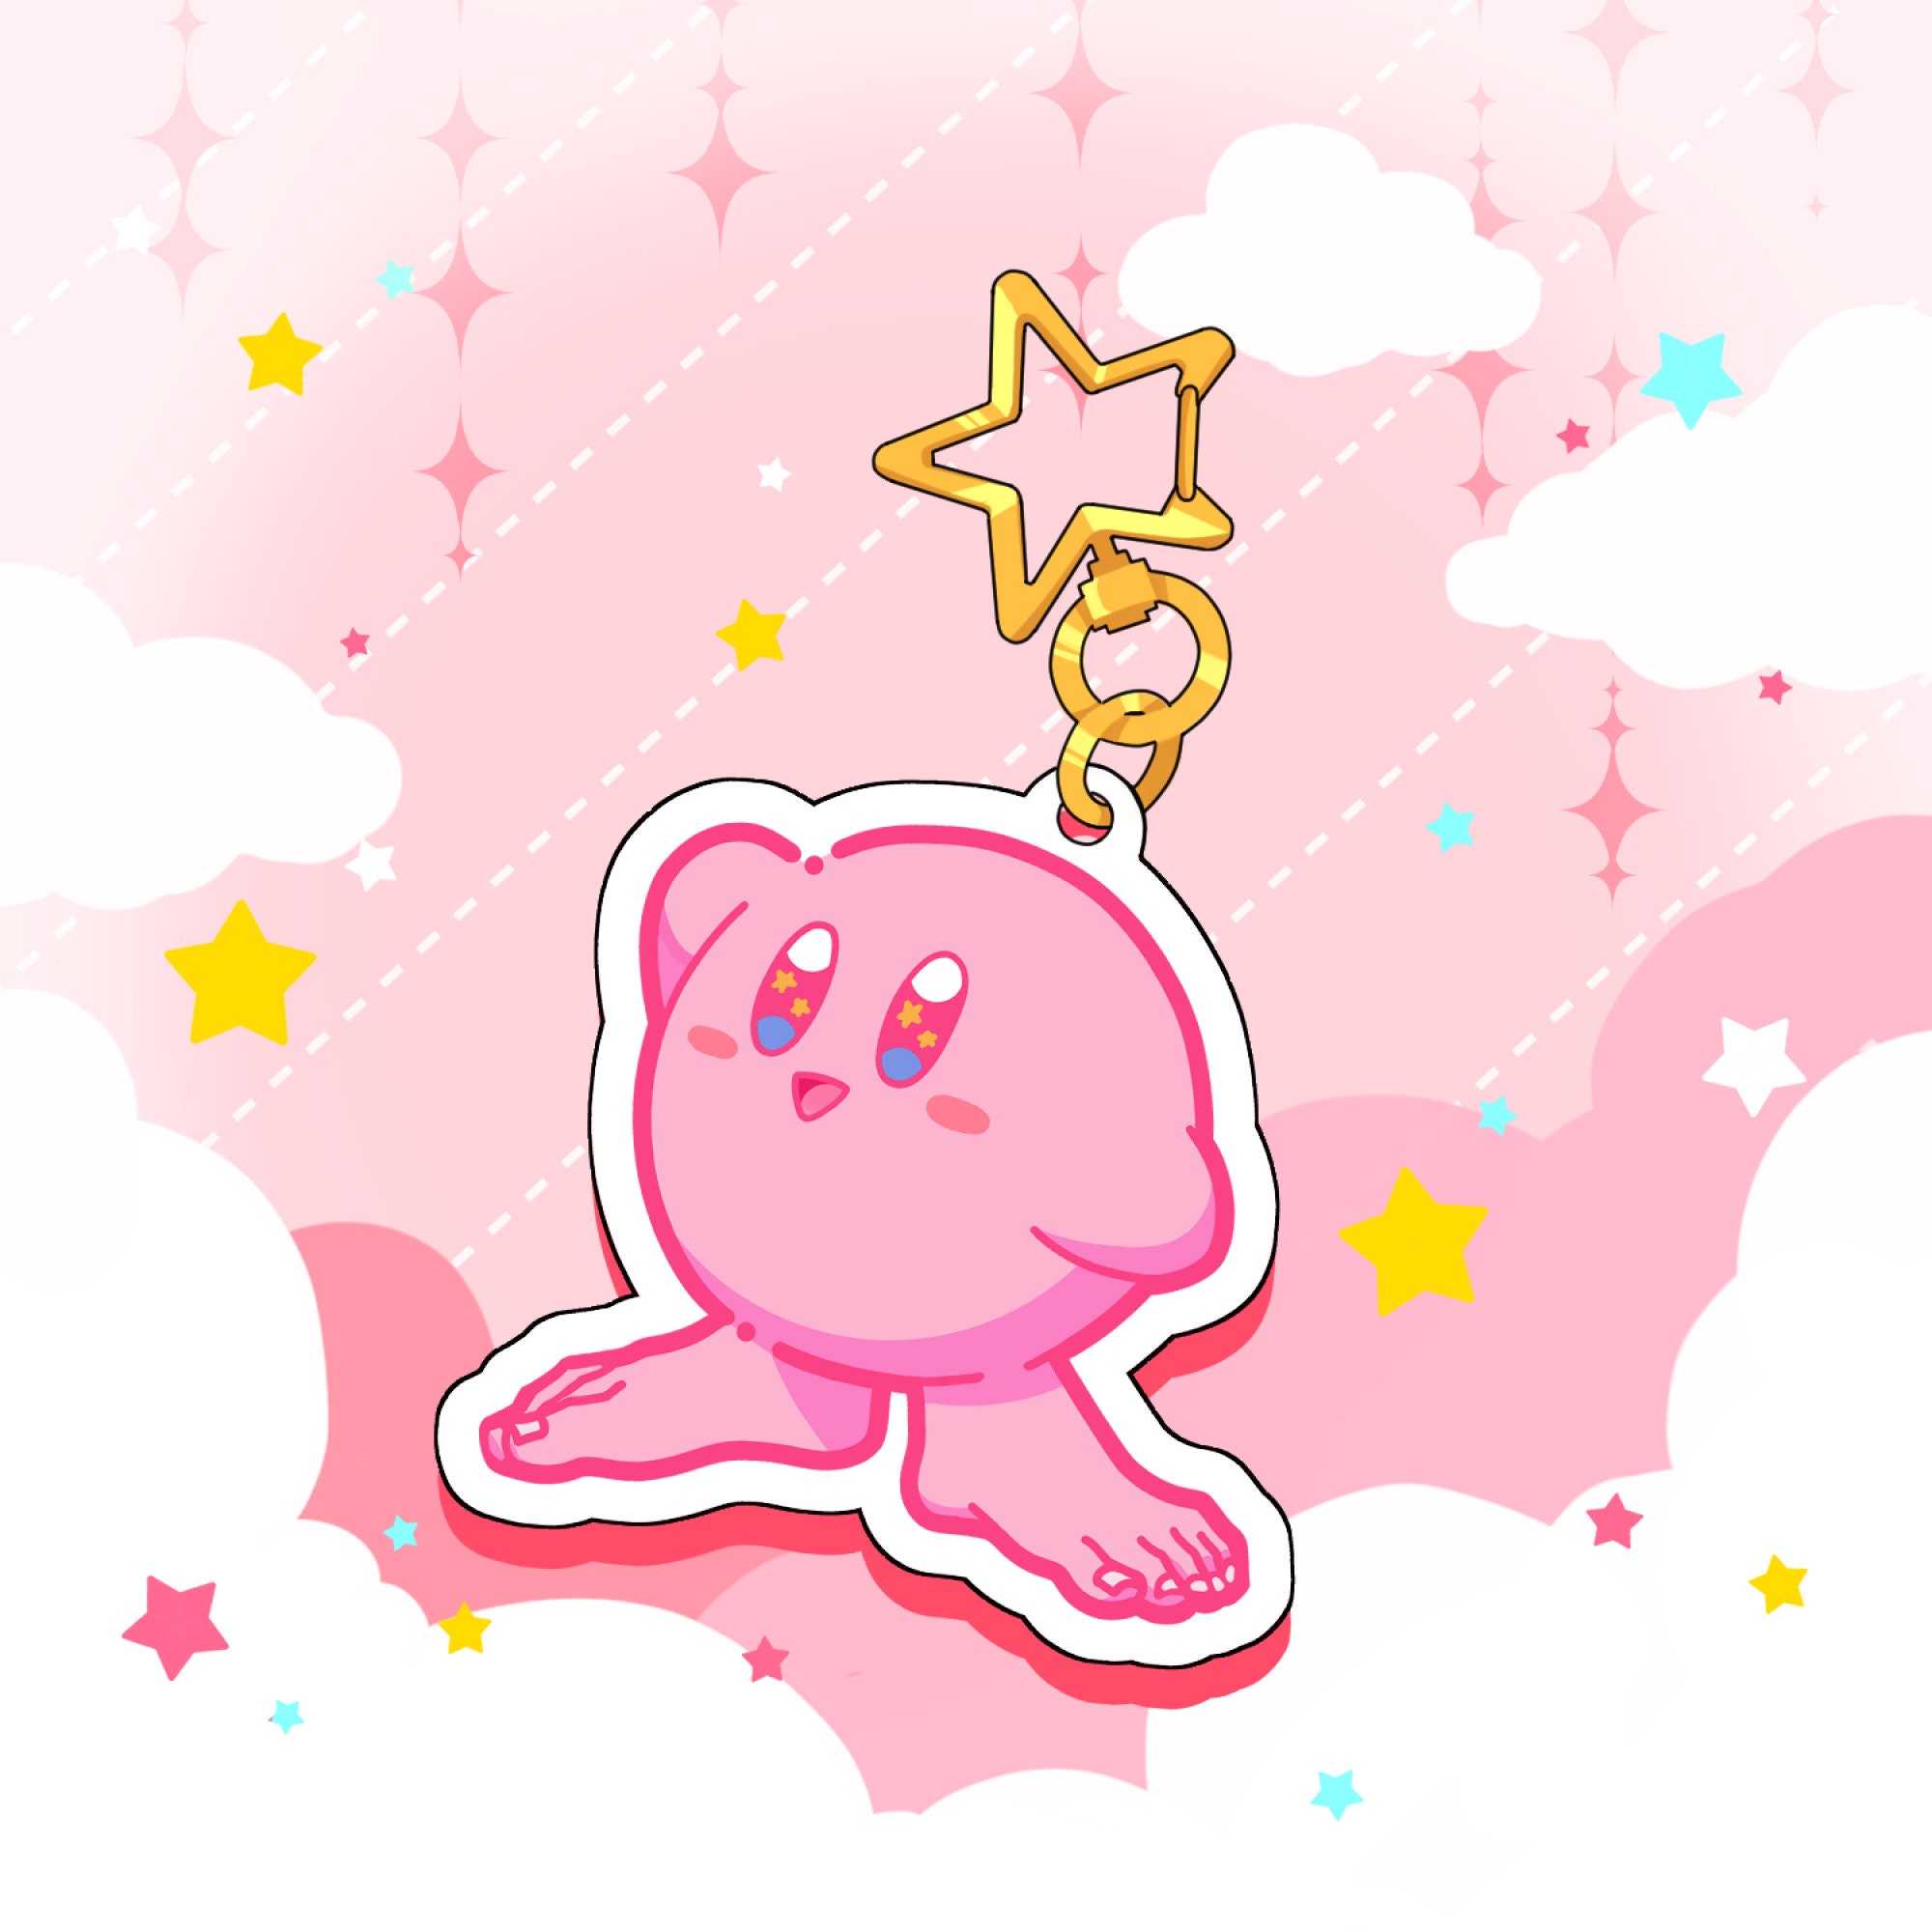 Kirby Auto Rückspiegel Ornament, Lustiges Kirby Meme Auto